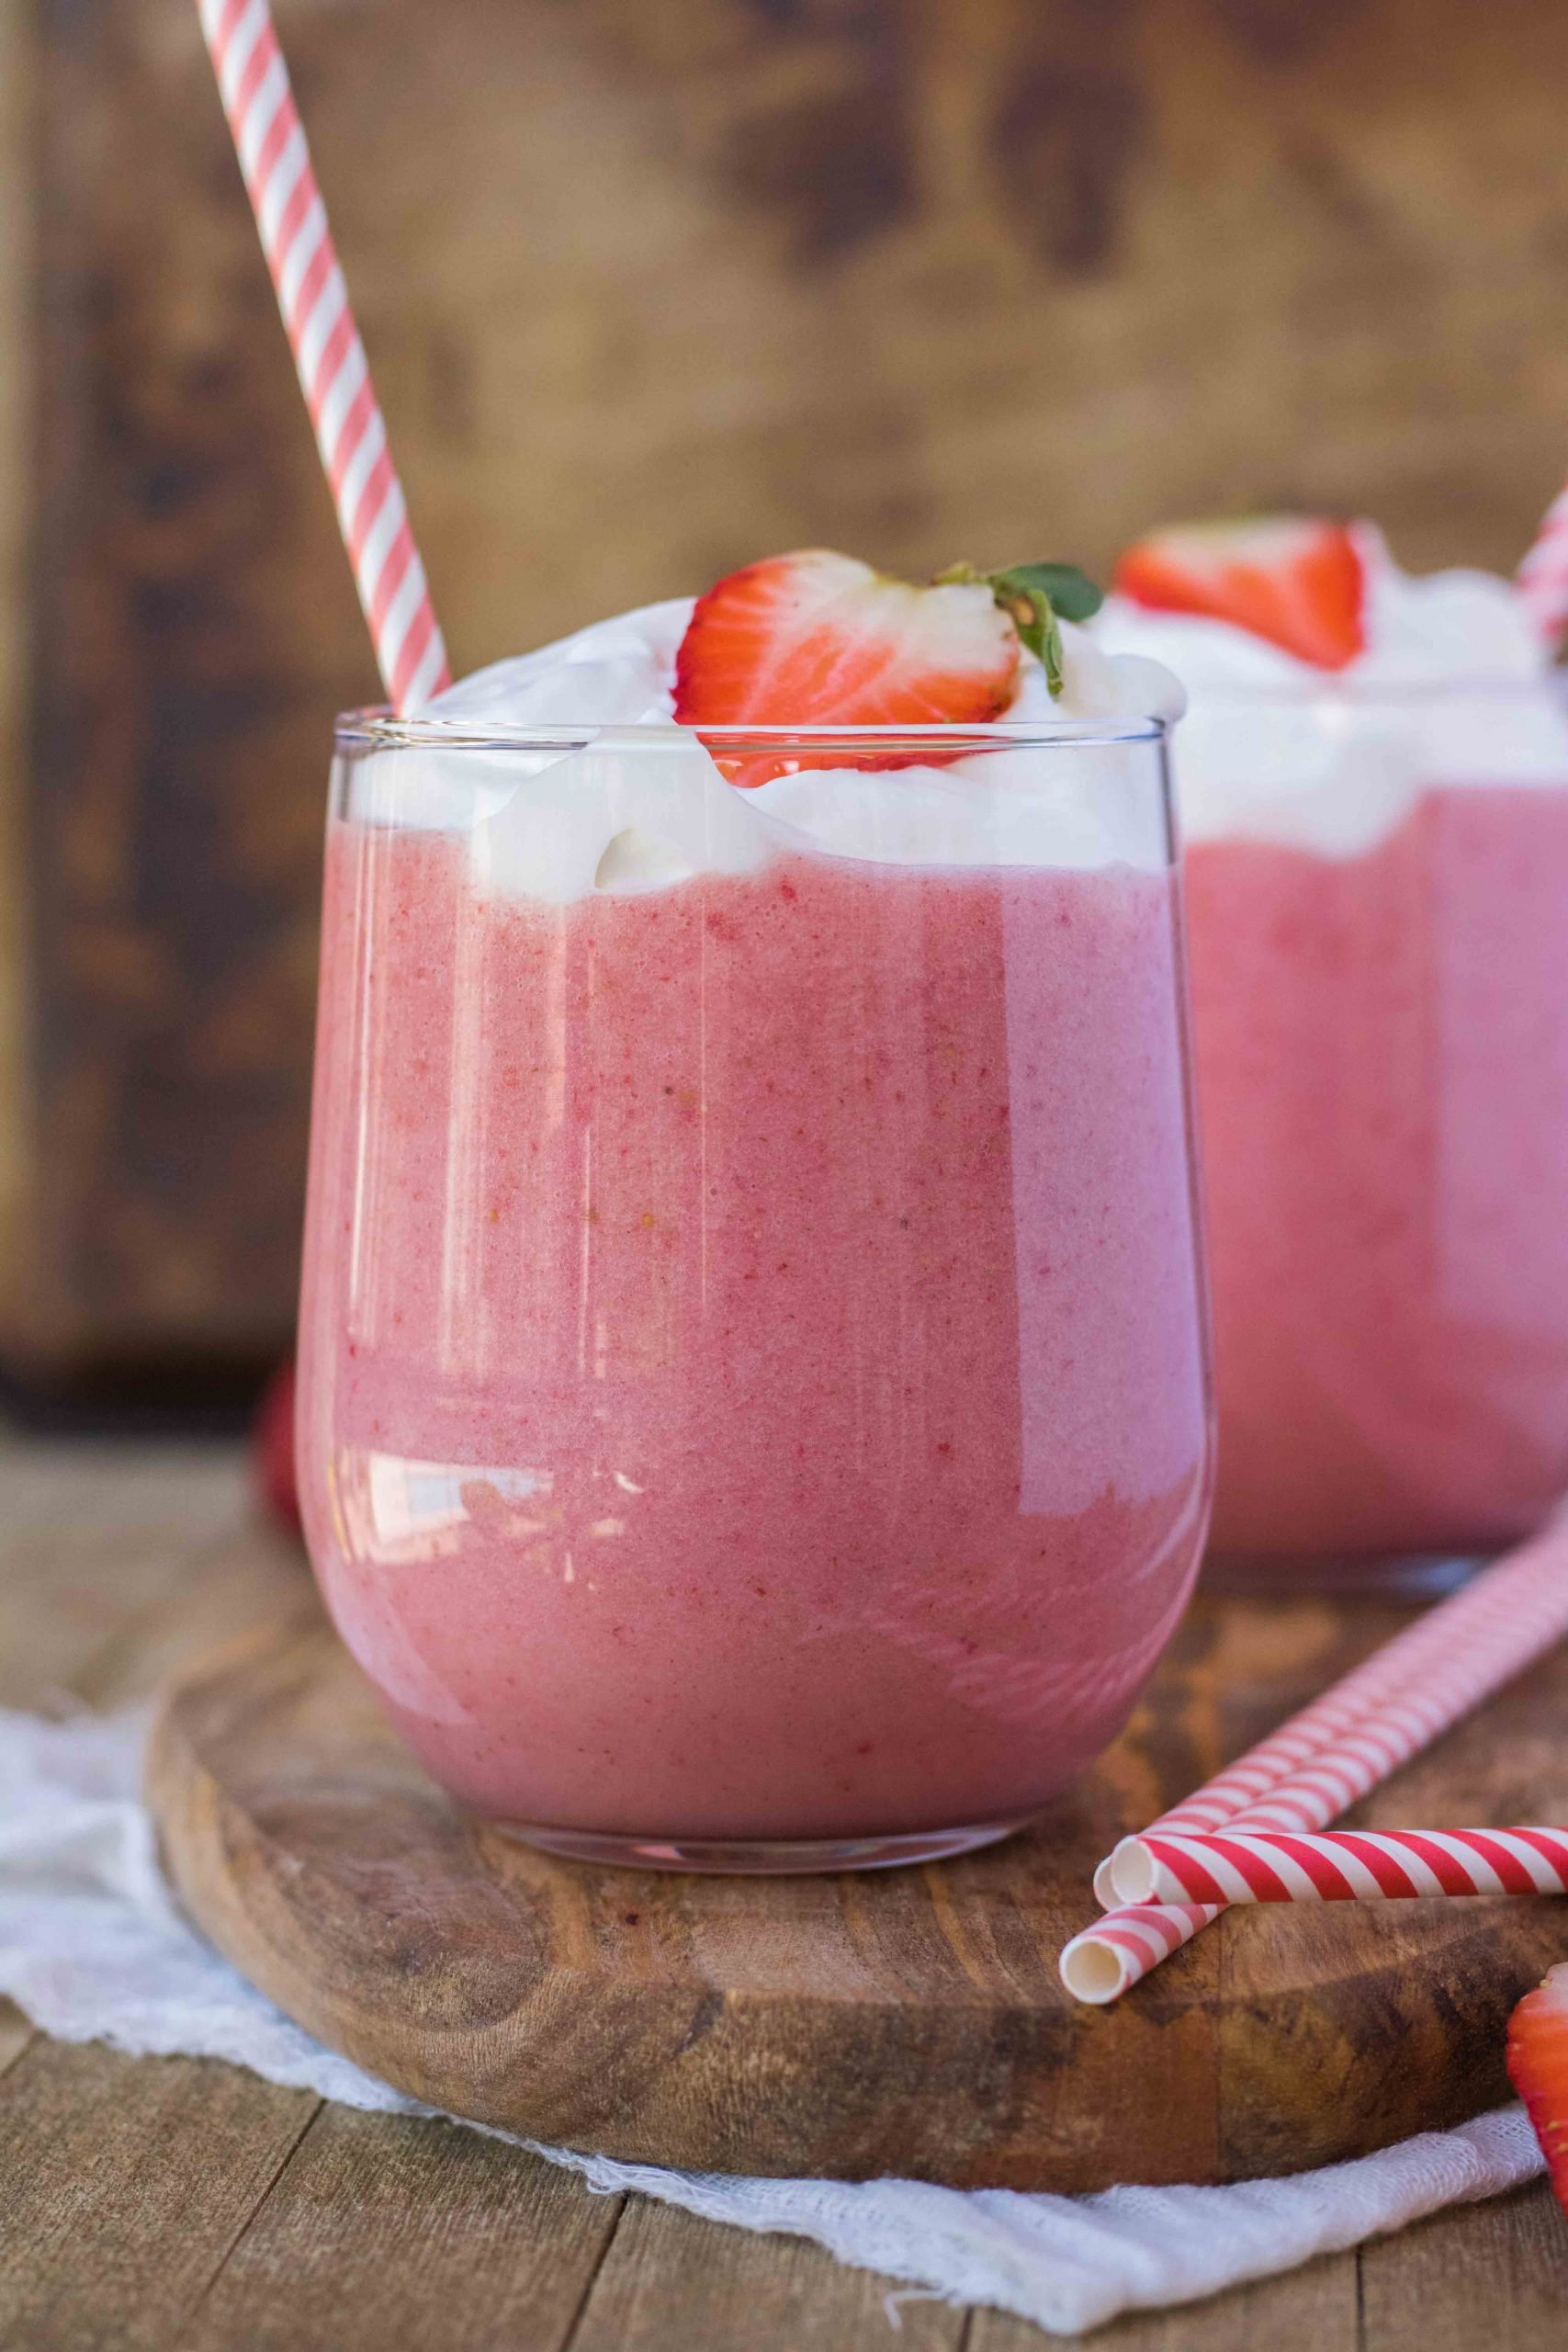 Strawberry banana yogurt smoothie